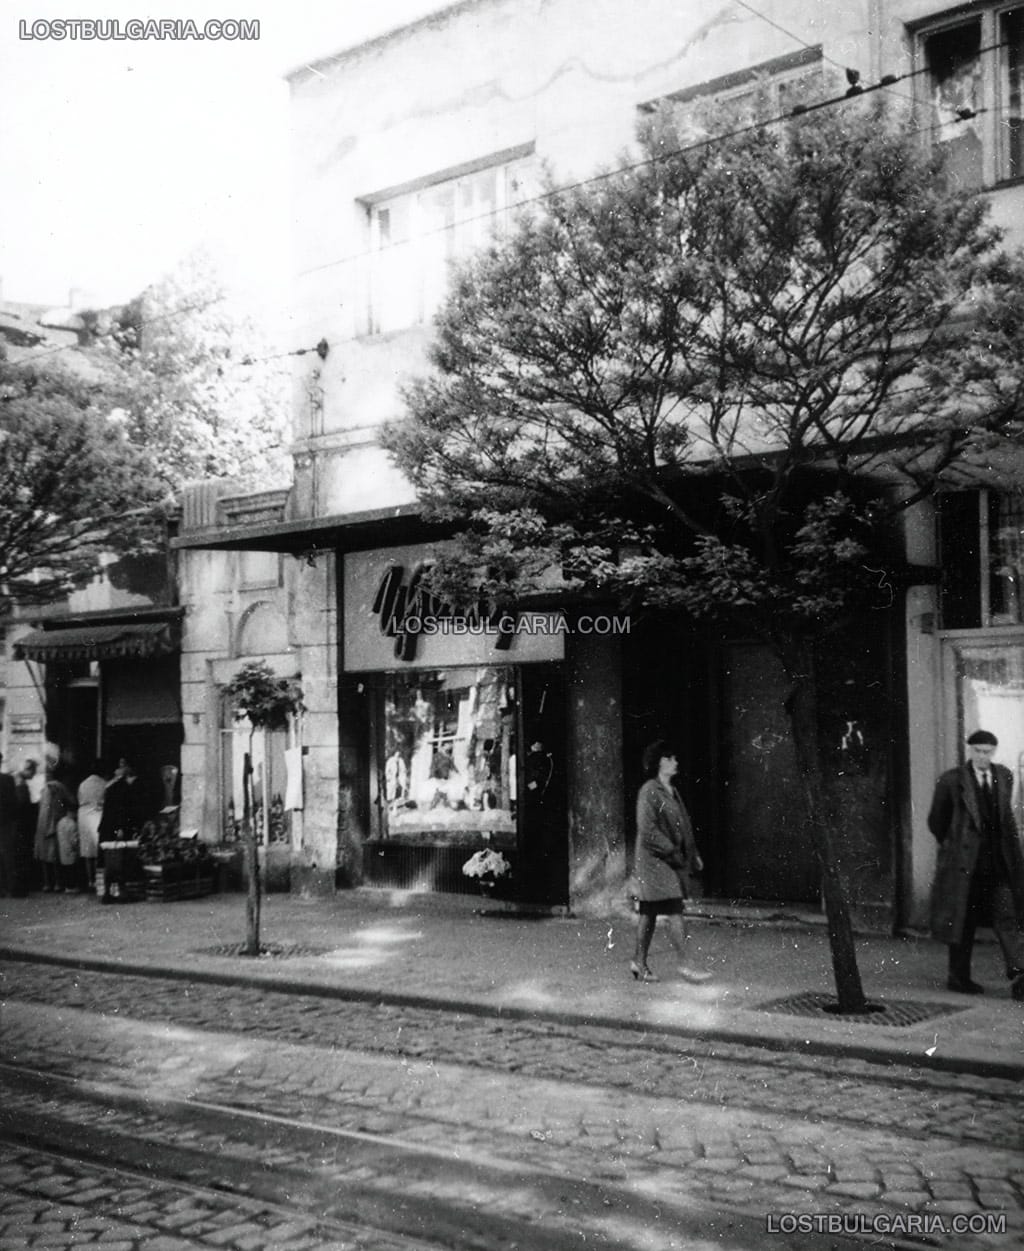 София, плод и зеленчук и магазин за цветя на улица "Граф Игнатиев", началото на 60-те години на ХХ век